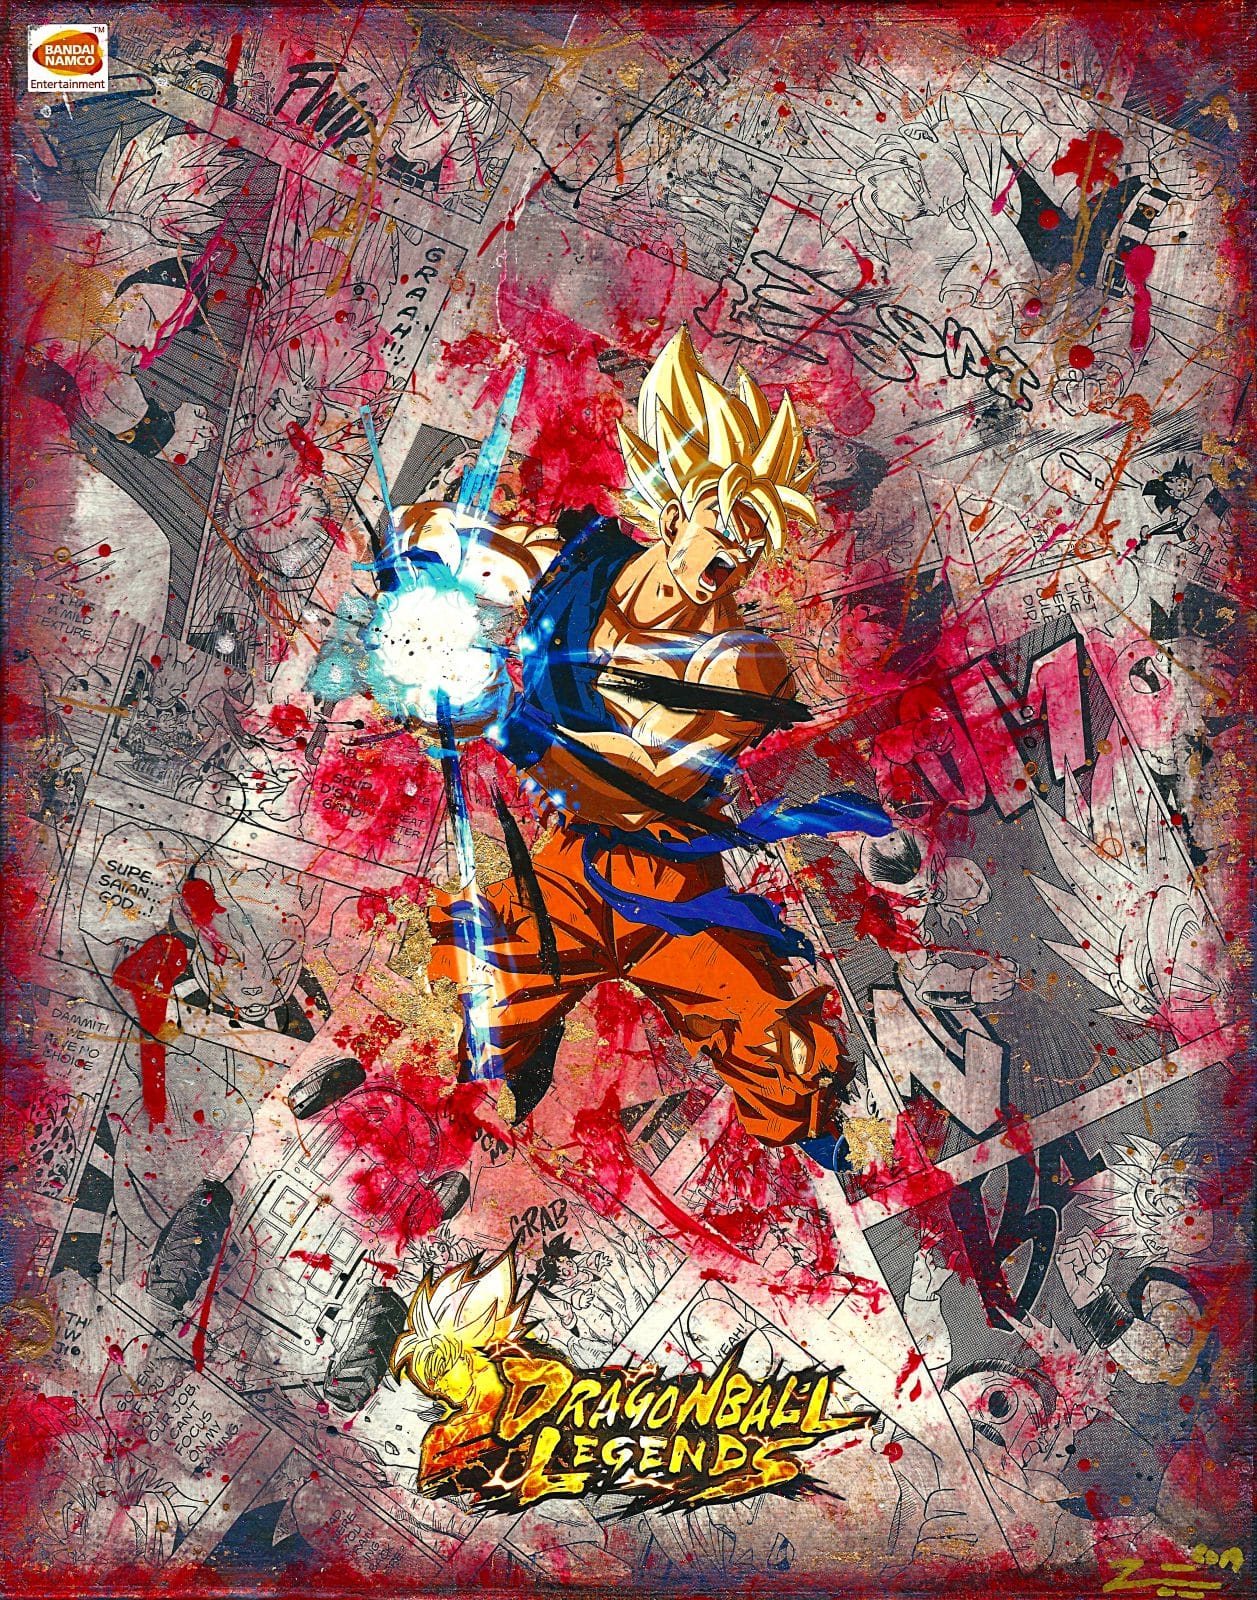 Dragon Ball Goku Super Saiyan | Photographic Print